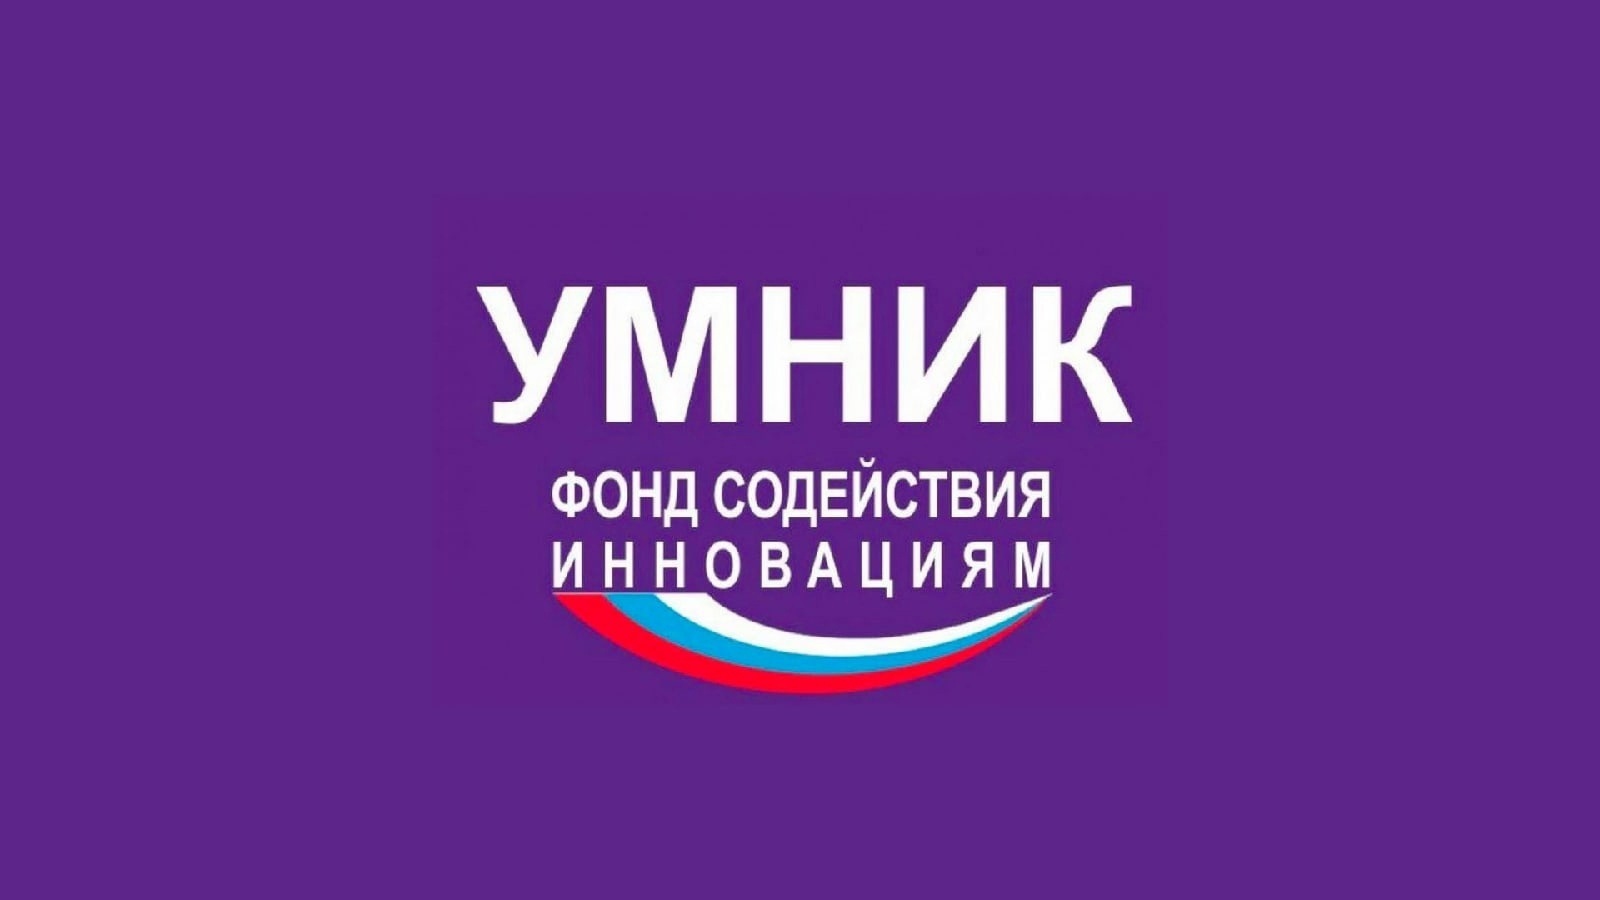 Стартовал региональный конкурс «УМНИК-2023» - это Шанс получить 500 тыс. руб. на разработку своей идеи на ранней стадии